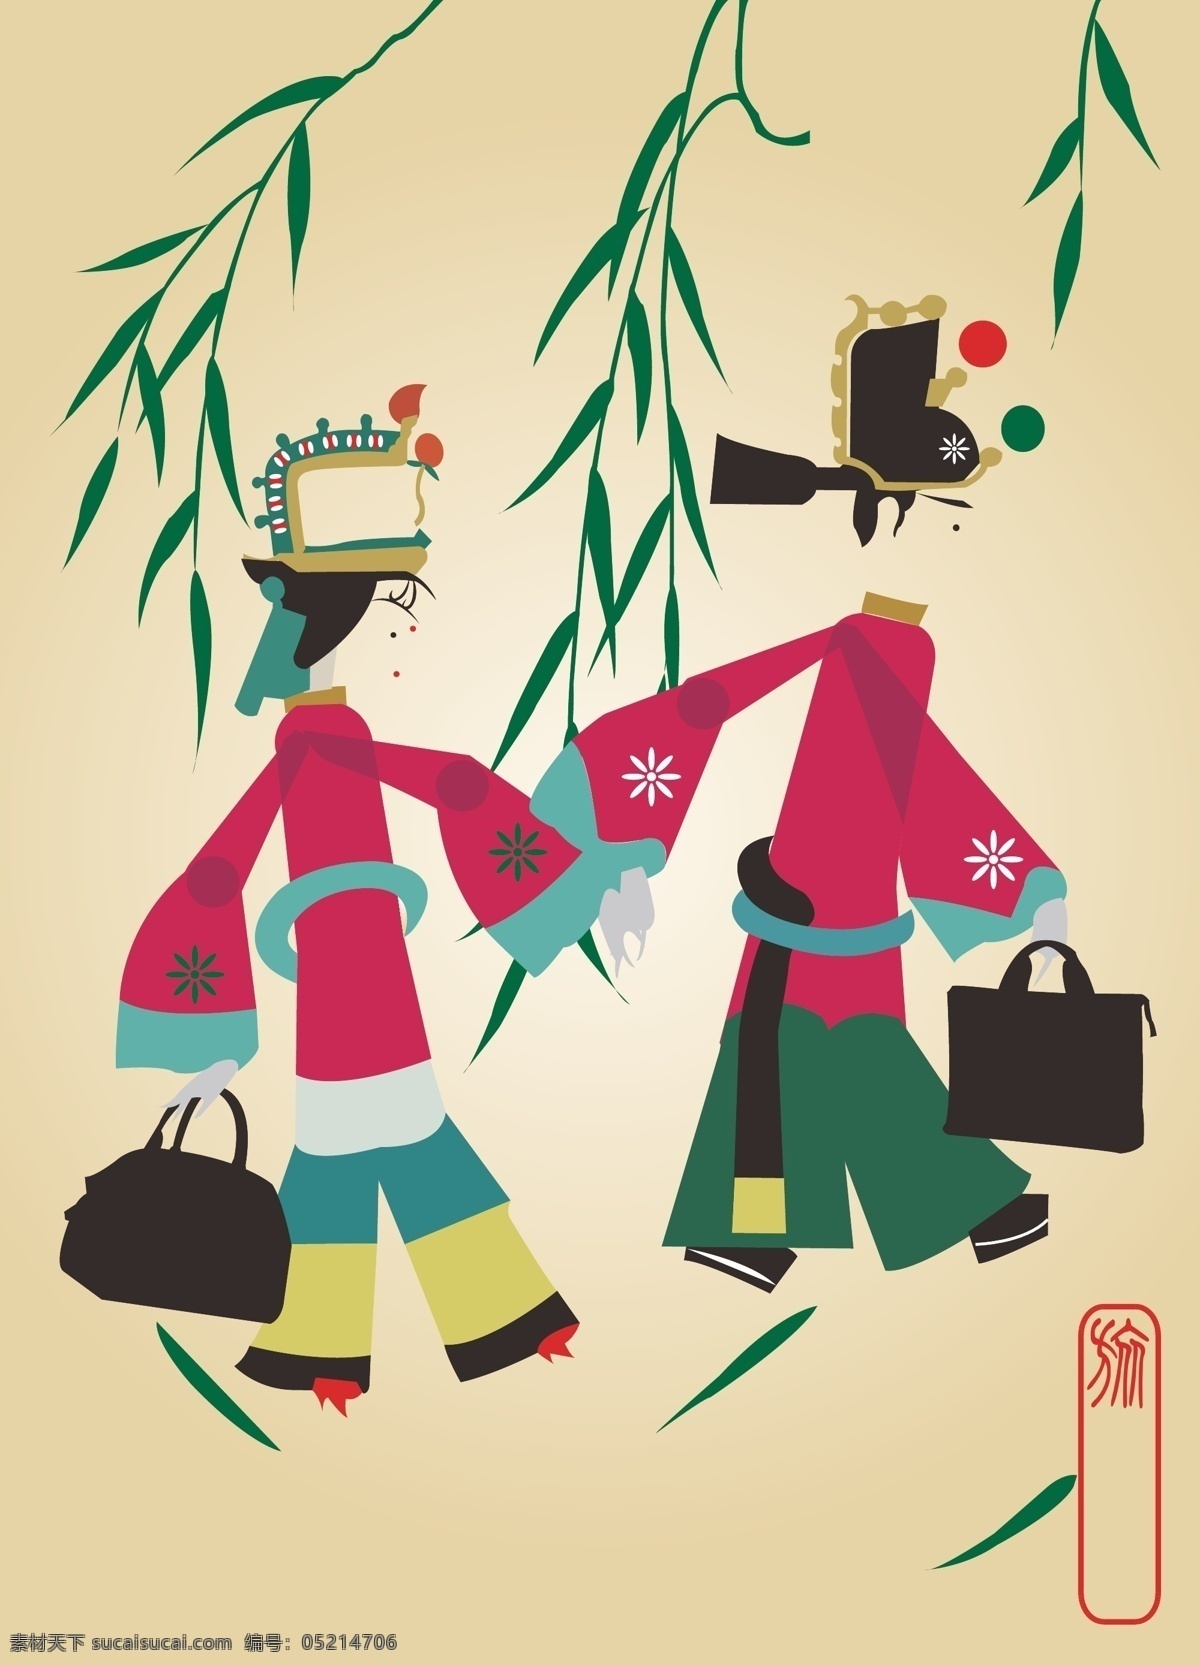 传统 创意 杭州 纪念 皮影 平面设计 旅游节 海报 矢量 模板下载 旅游节海报 文化 psd源文件